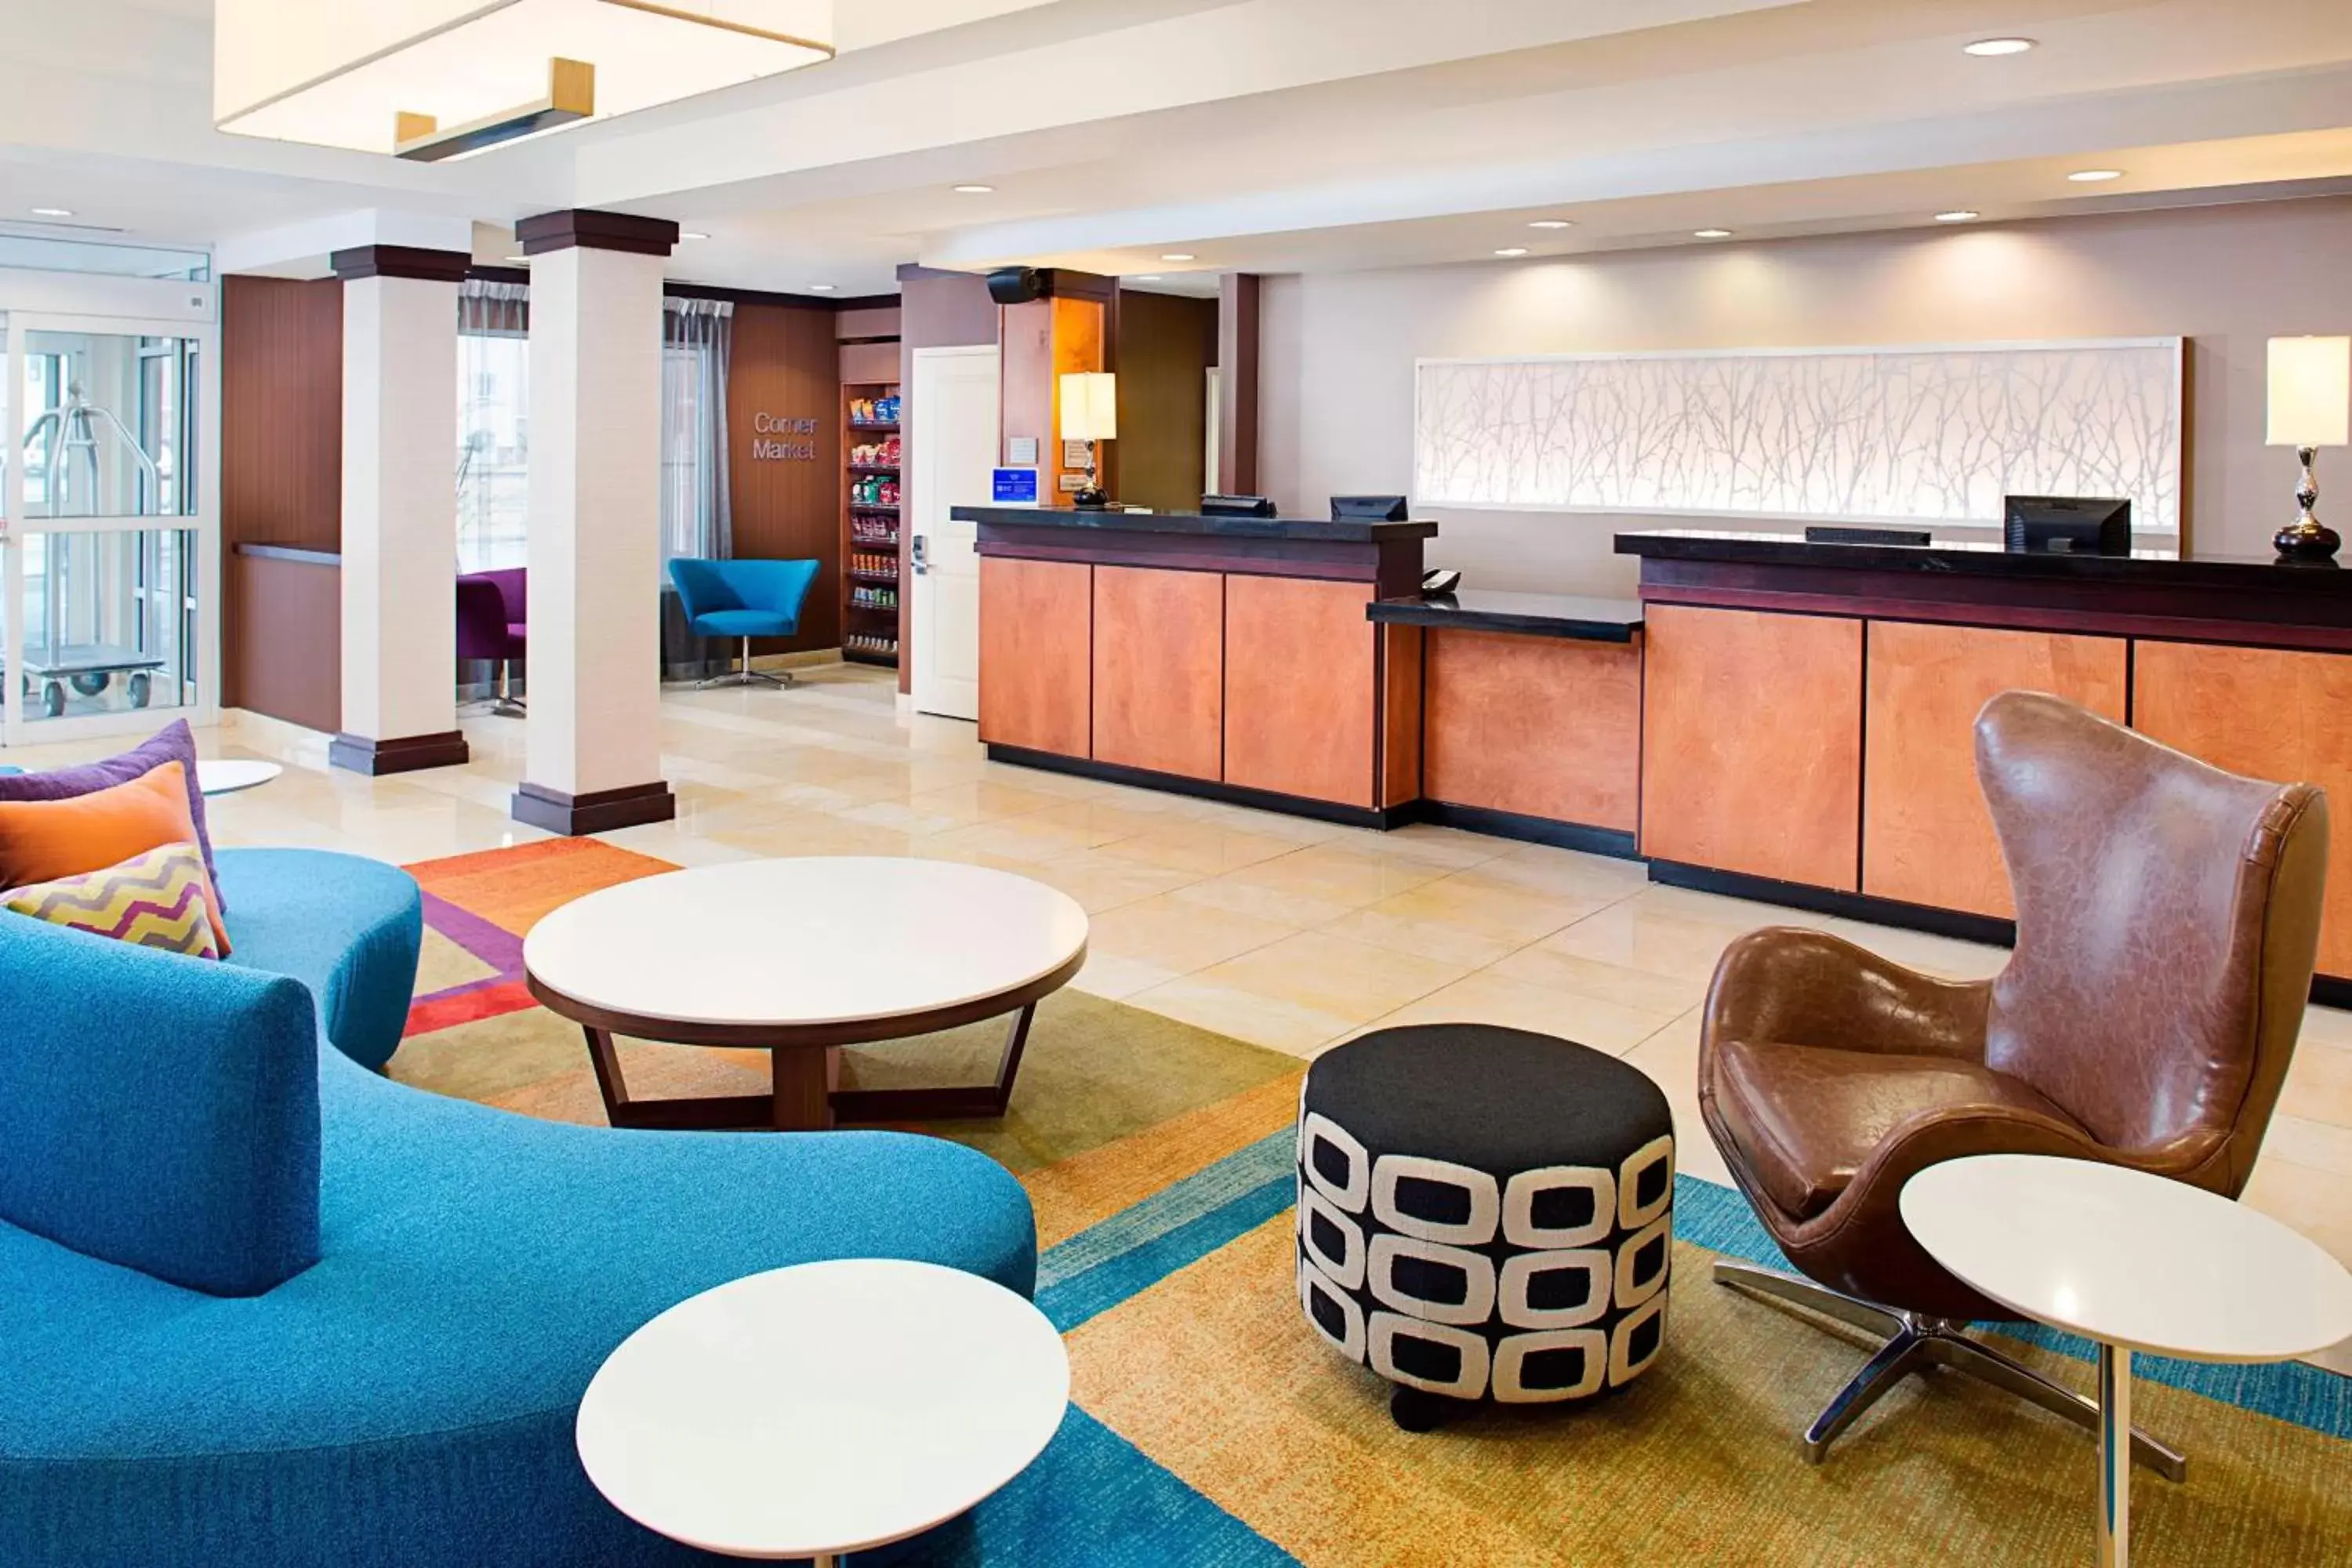 Lobby or reception, Lobby/Reception in Fairfield Inn & Suites by Marriott Jonesboro